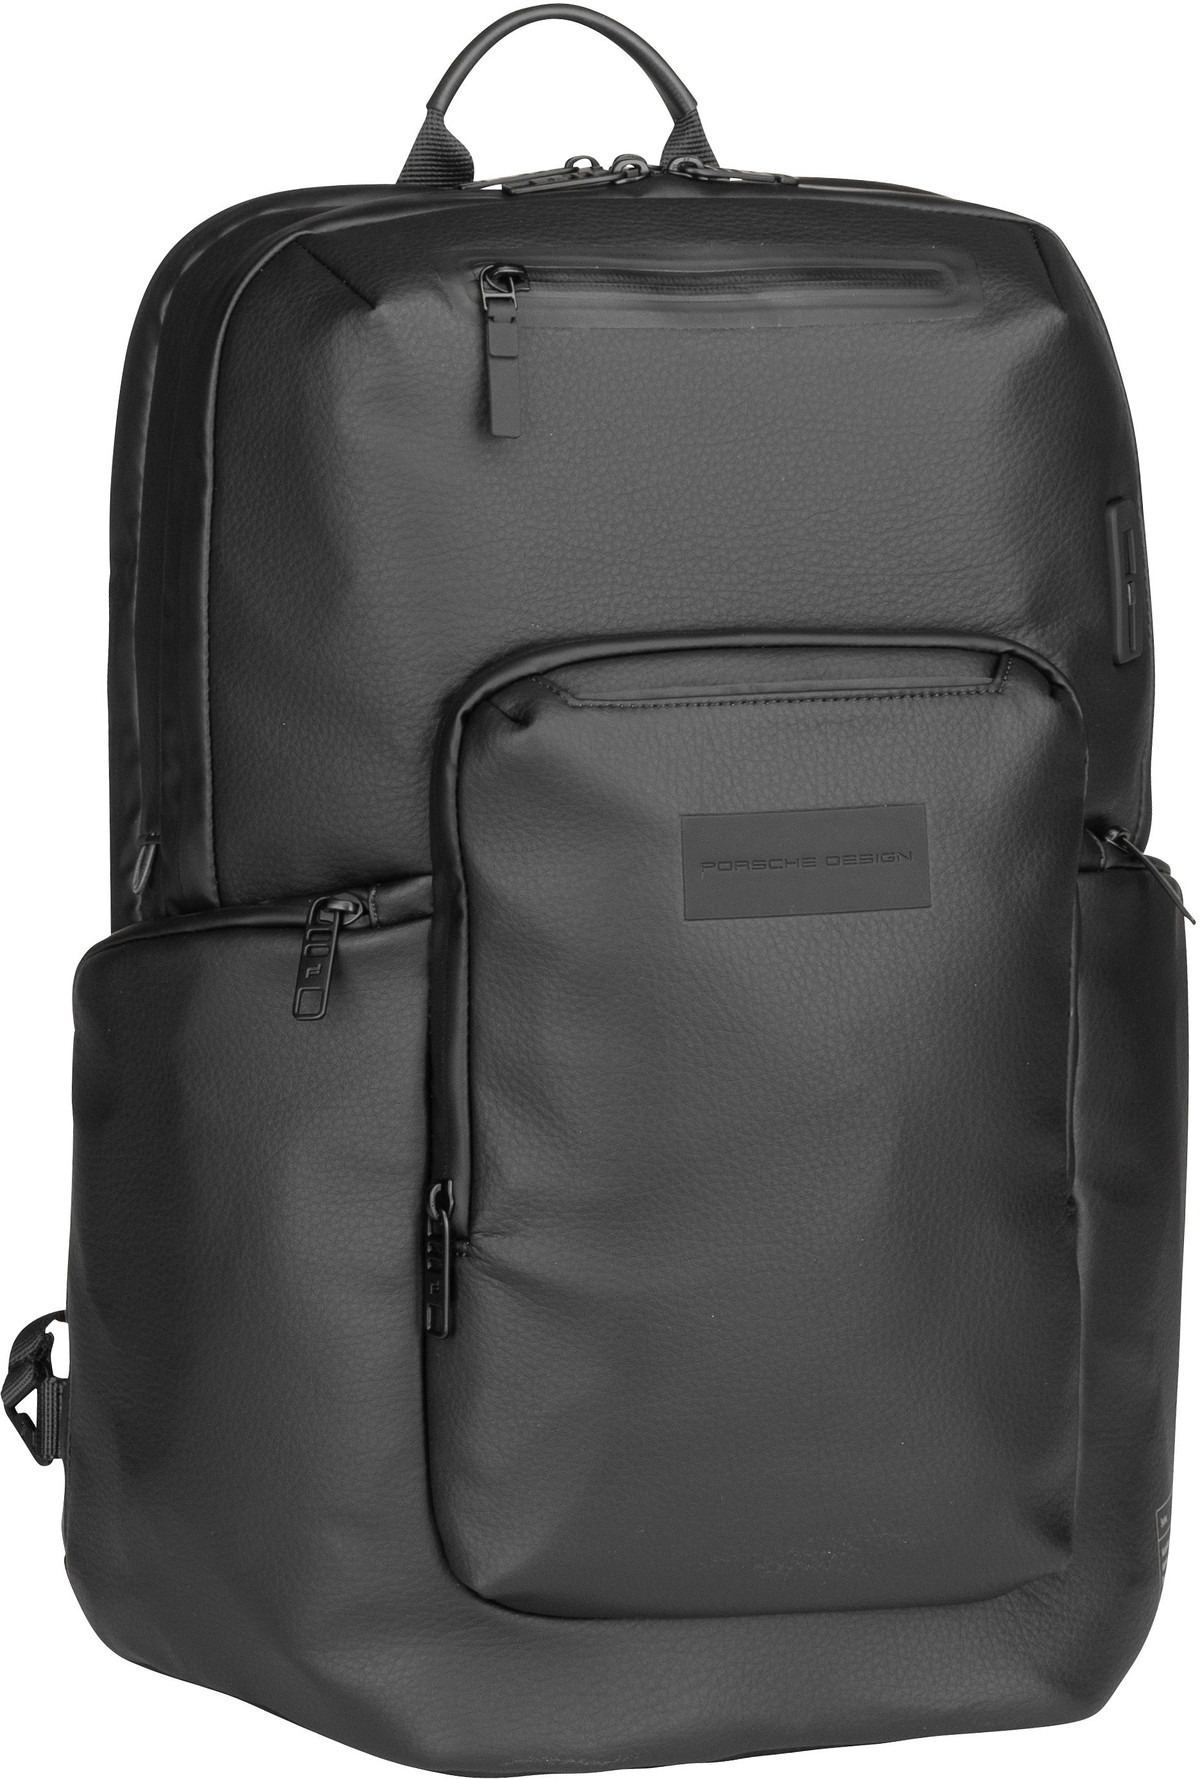 Porsche Design Urban Eco Leather Backpack M2  in Black (24.1 Liter), Rucksack / Backpack